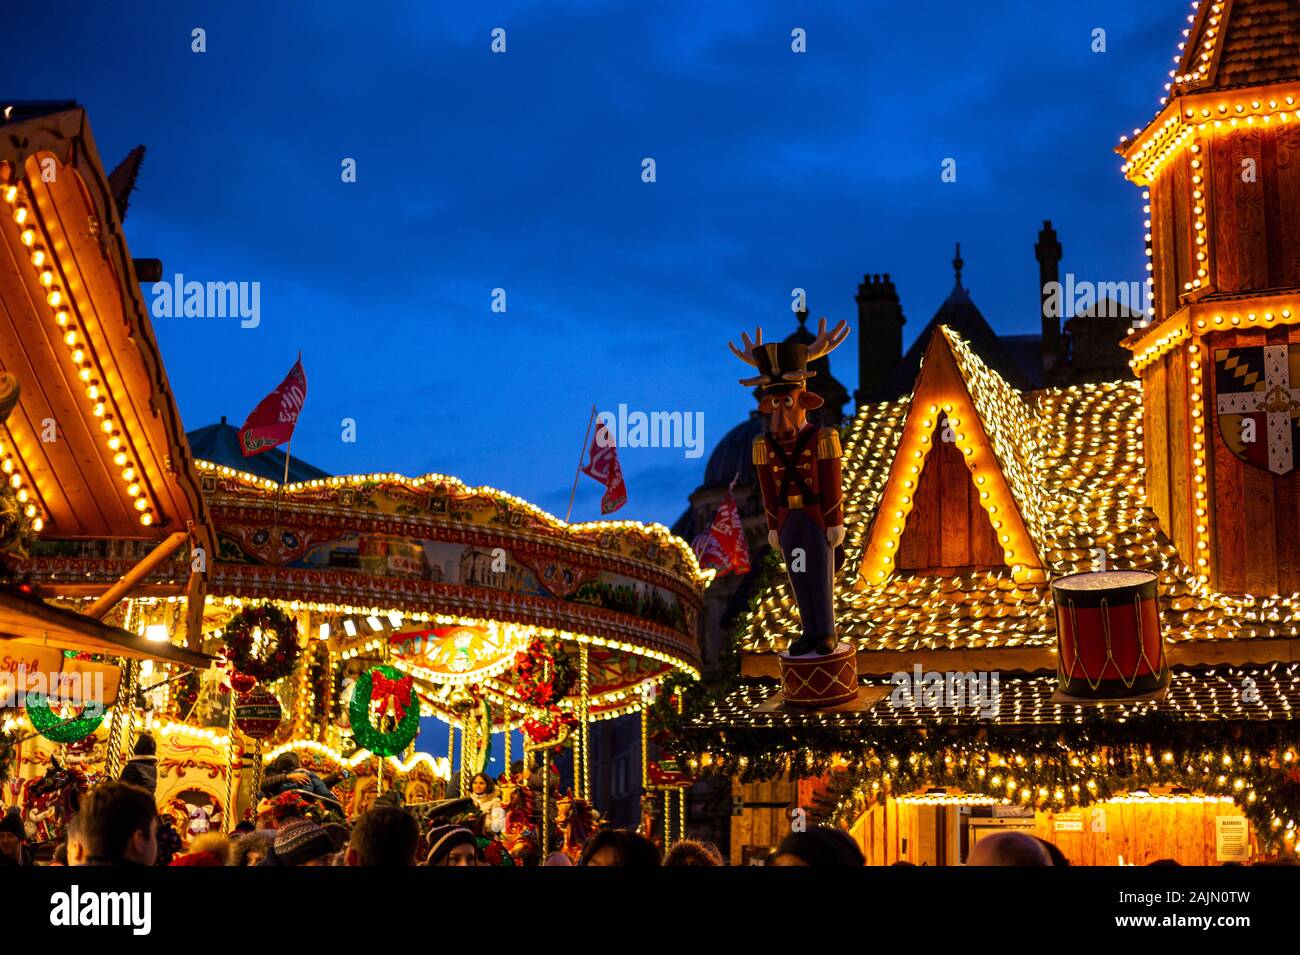 BIRMINGHAM, VEREINIGTES KÖNIGREICH - Dezember 15, 2019: Handel Marktstand Lichter am Victoria Square während der jährlichen Weihnachten Fraknkfurt Markt Stockfoto